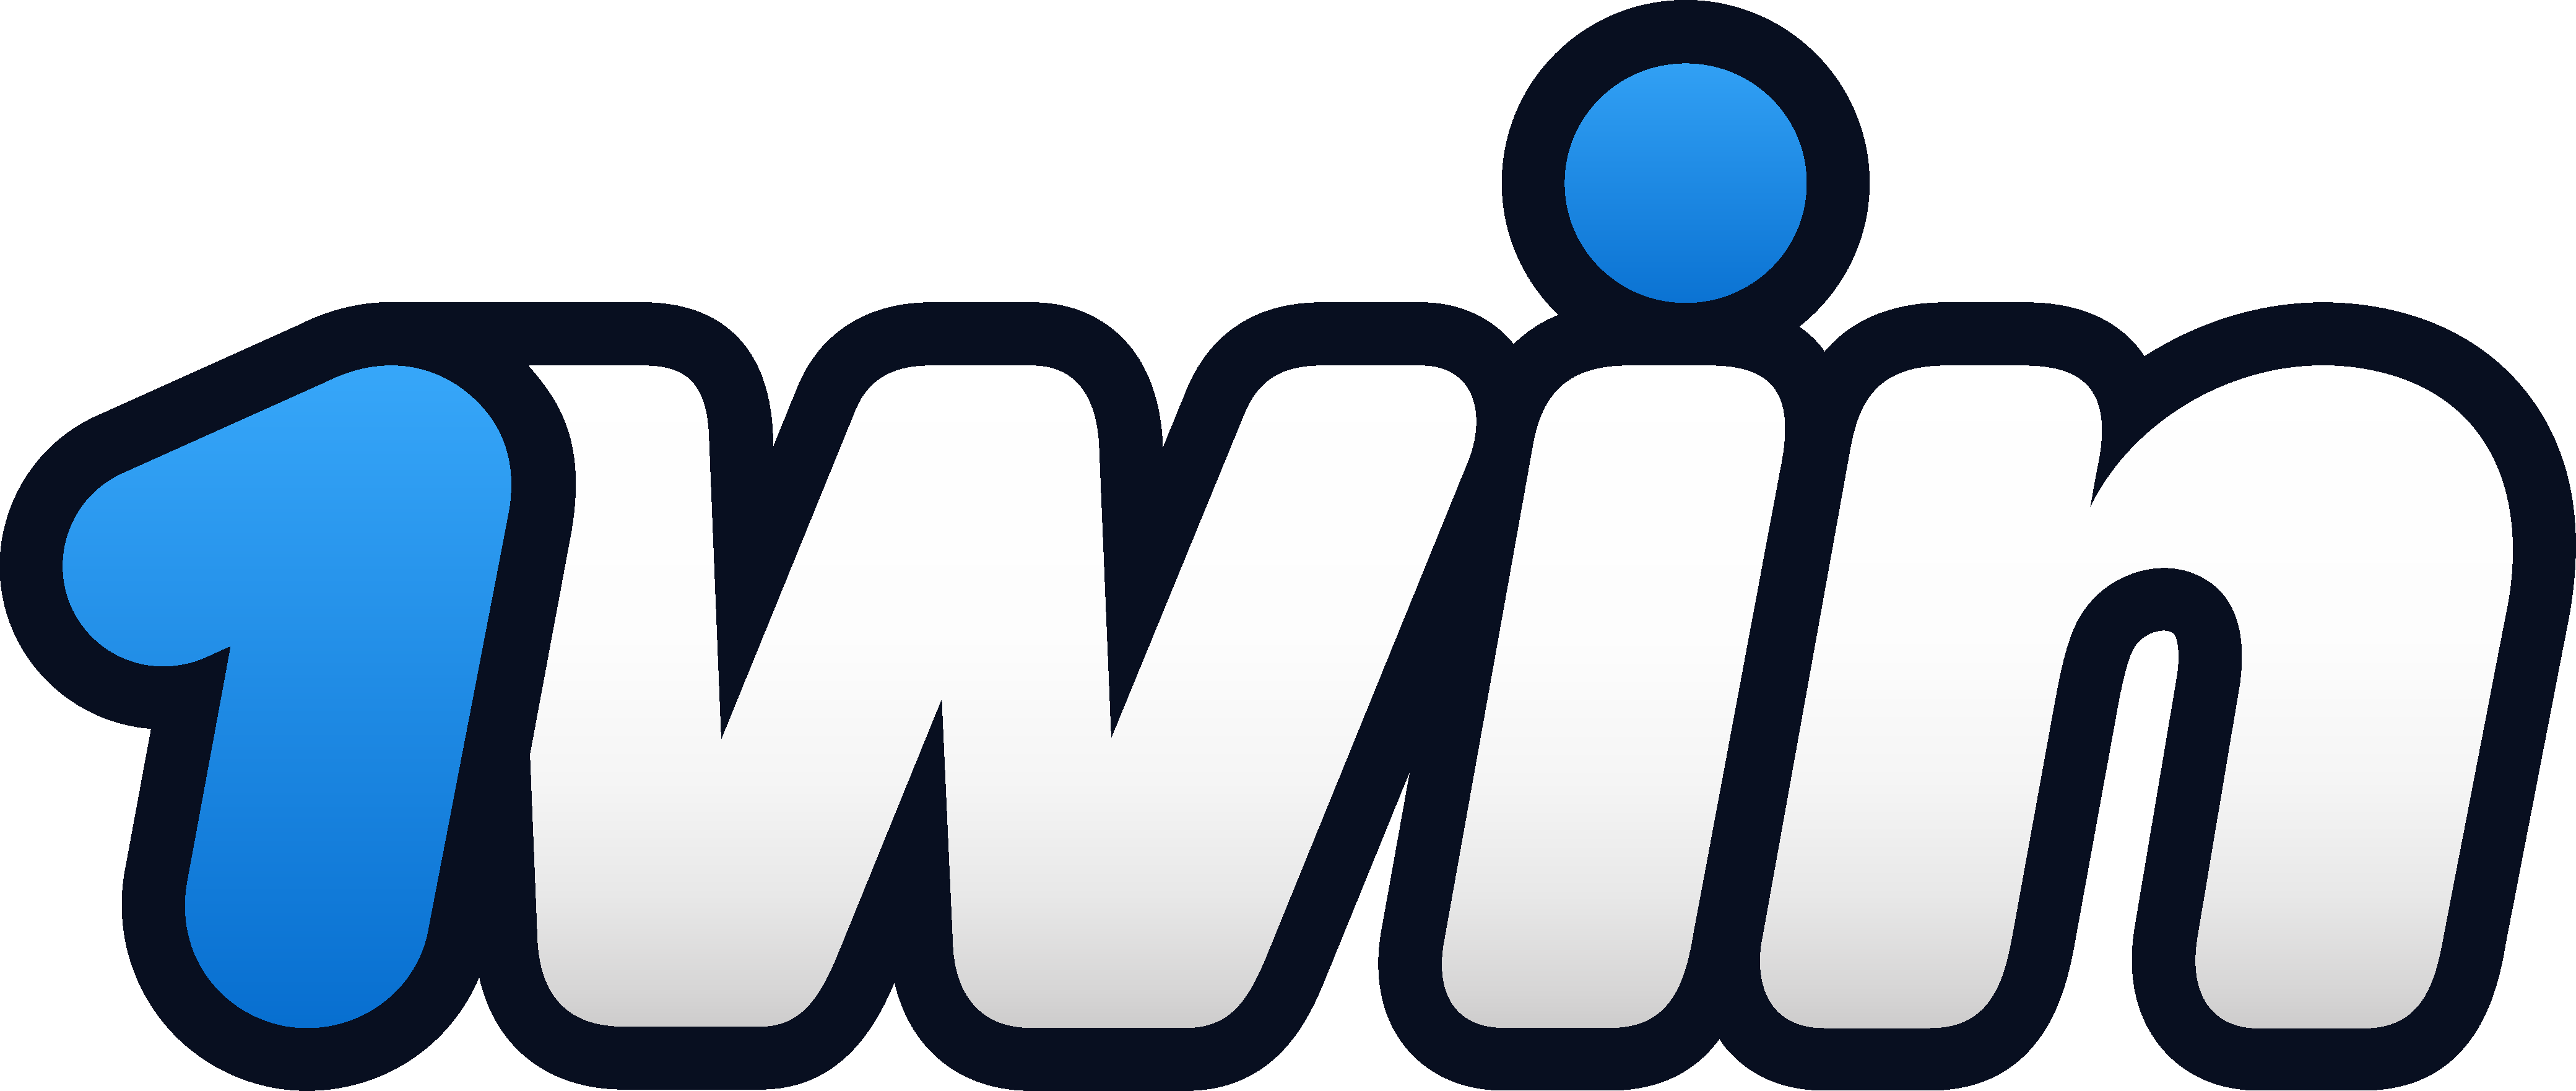 1win sénégal logo